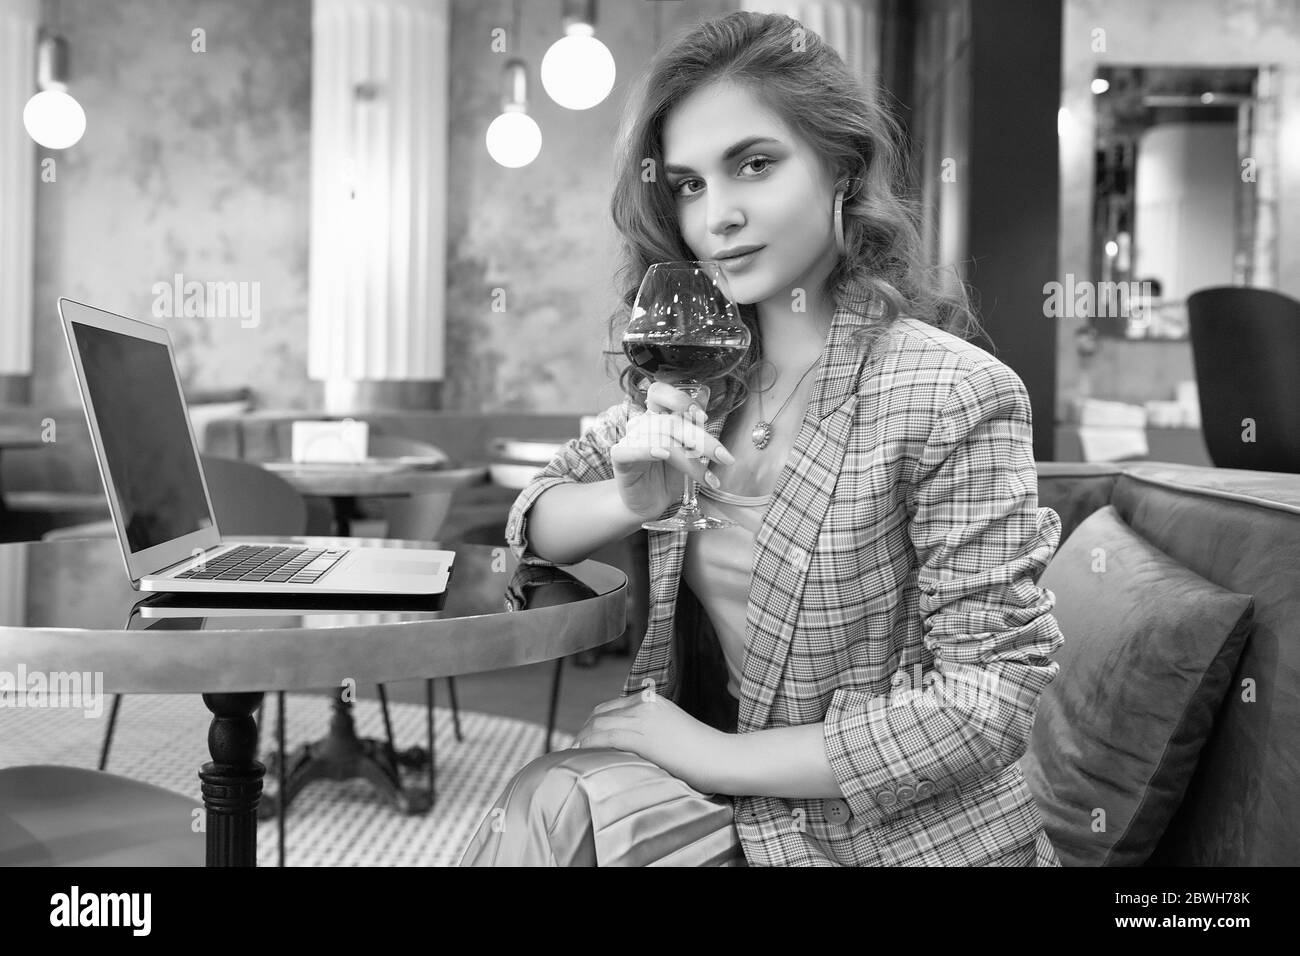 Porträt der selbstbewussten jungen Geschäftsfrau in smart casual wear Getränke Wein und Arbeit auf Laptop in einem Café-Interieur Stockfoto